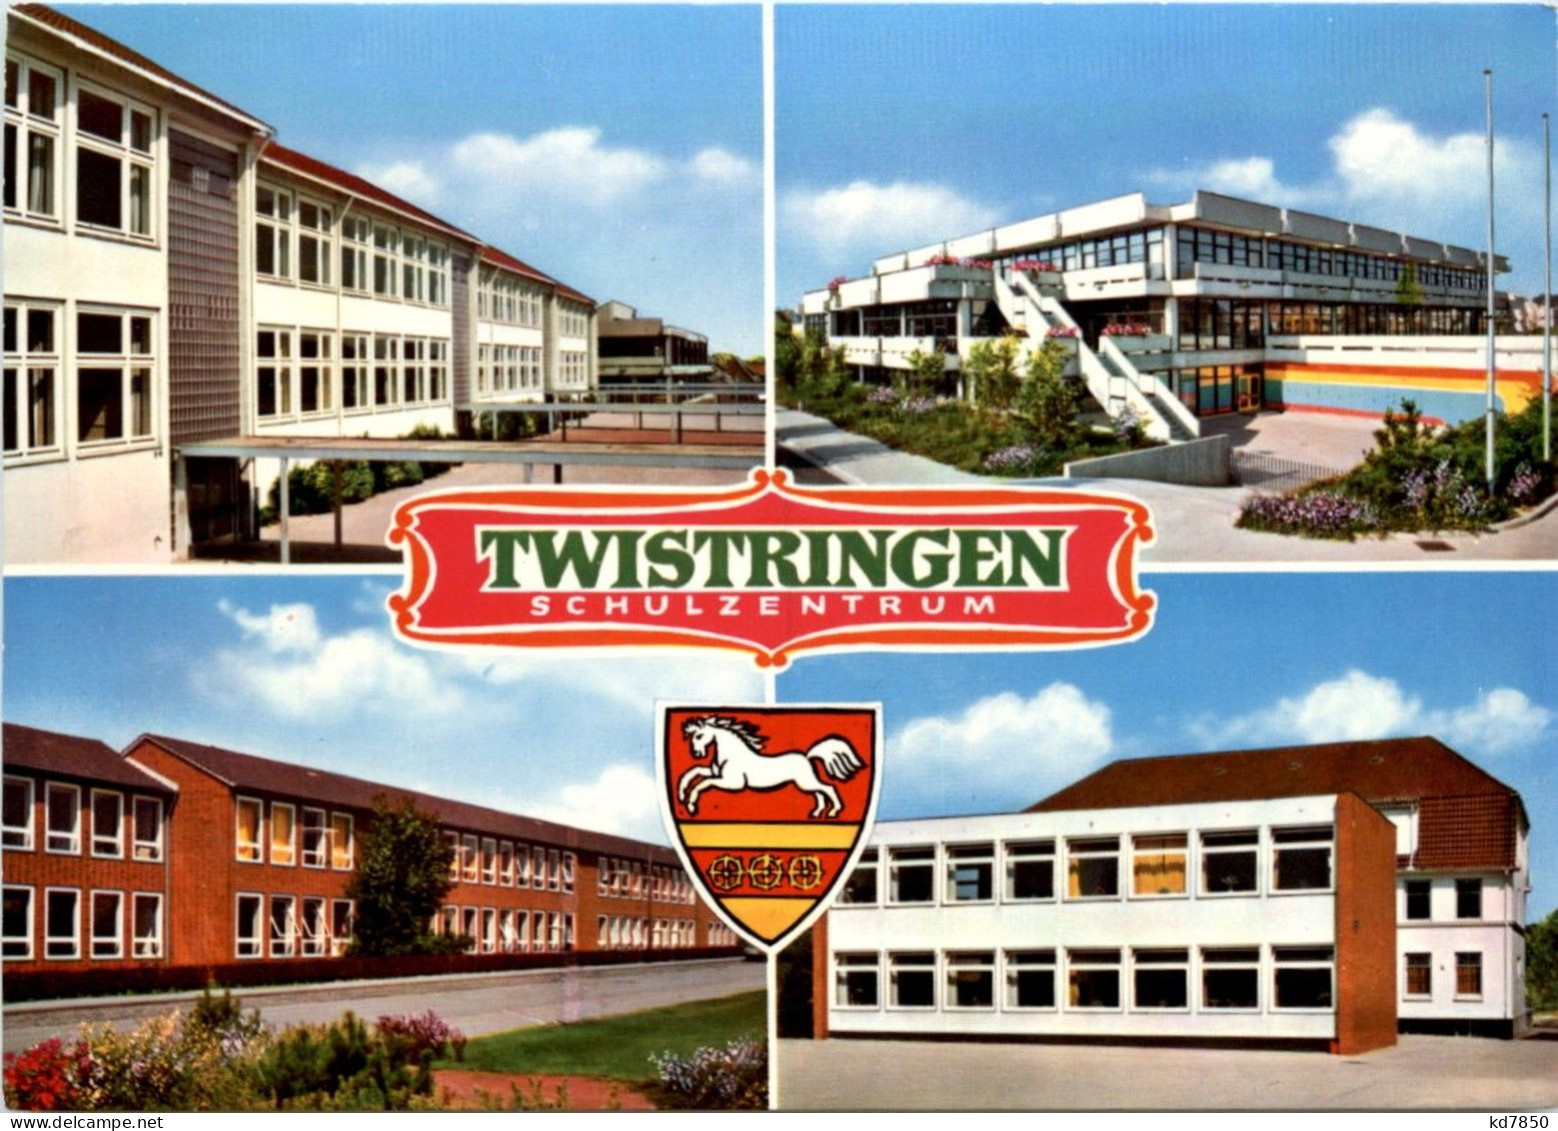 Twisteringen - Schluzentrum - Diepholz